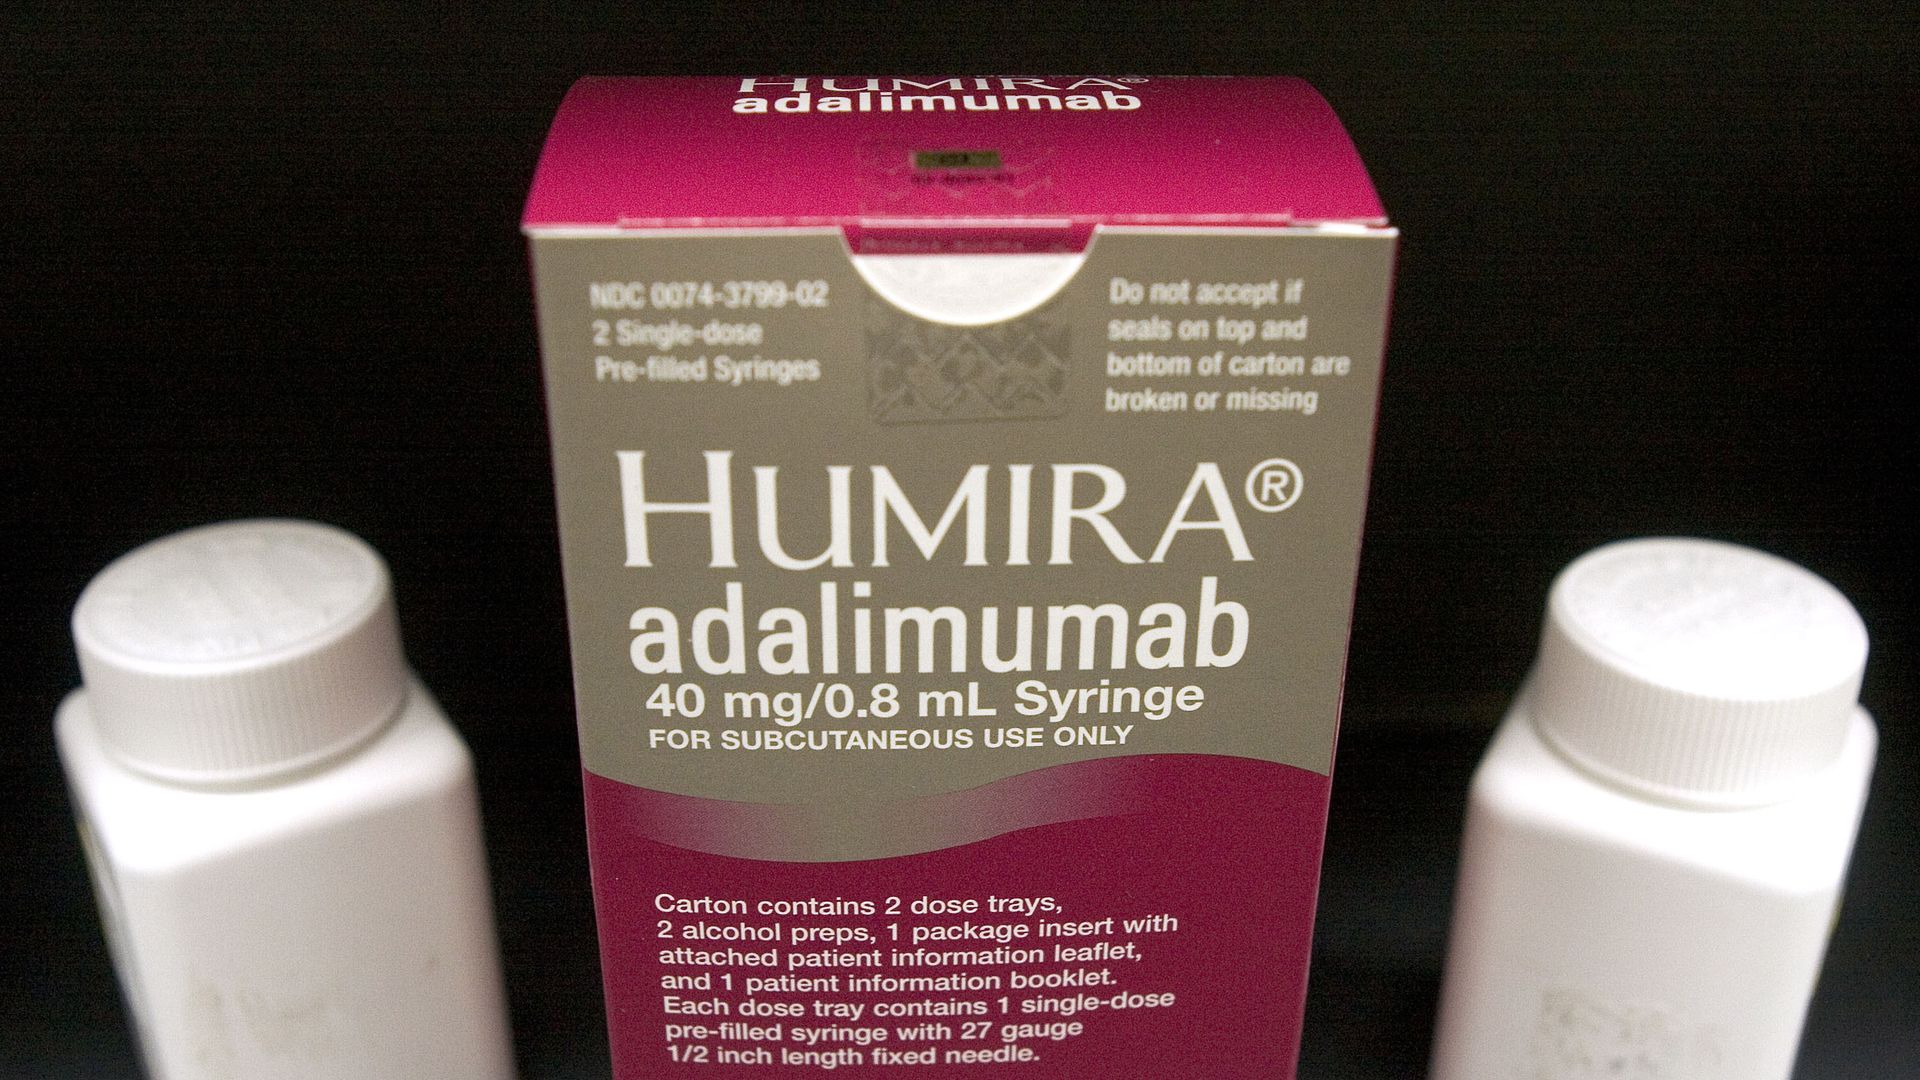 A box of Humira.